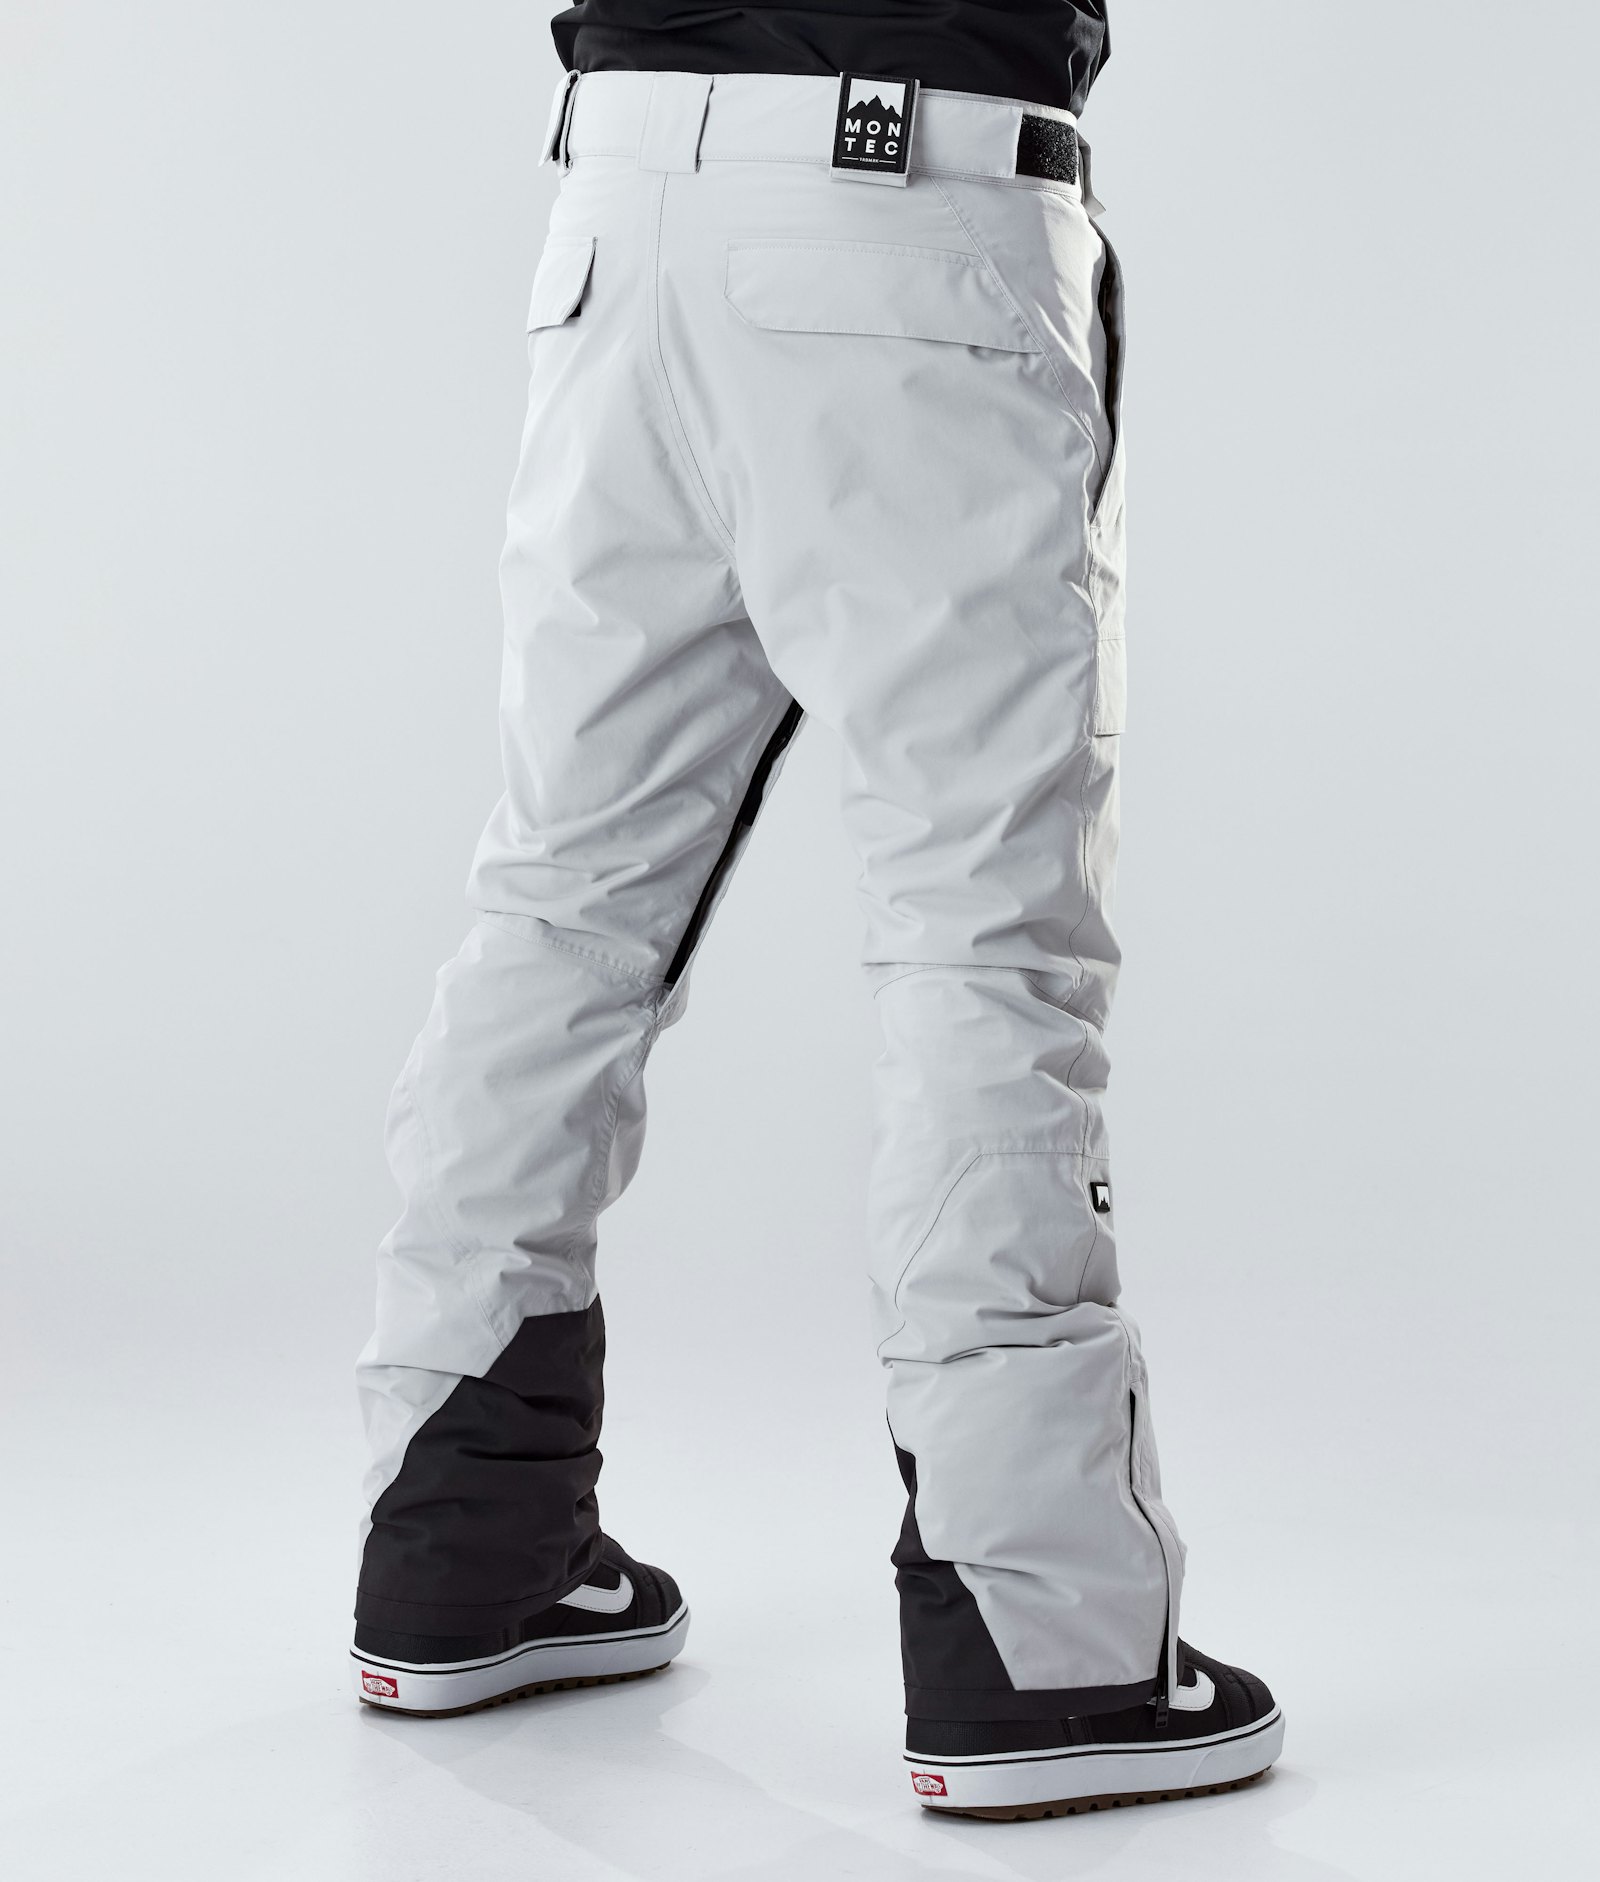 Montec Dune 2020 Pantalon de Snowboard Homme Light Grey